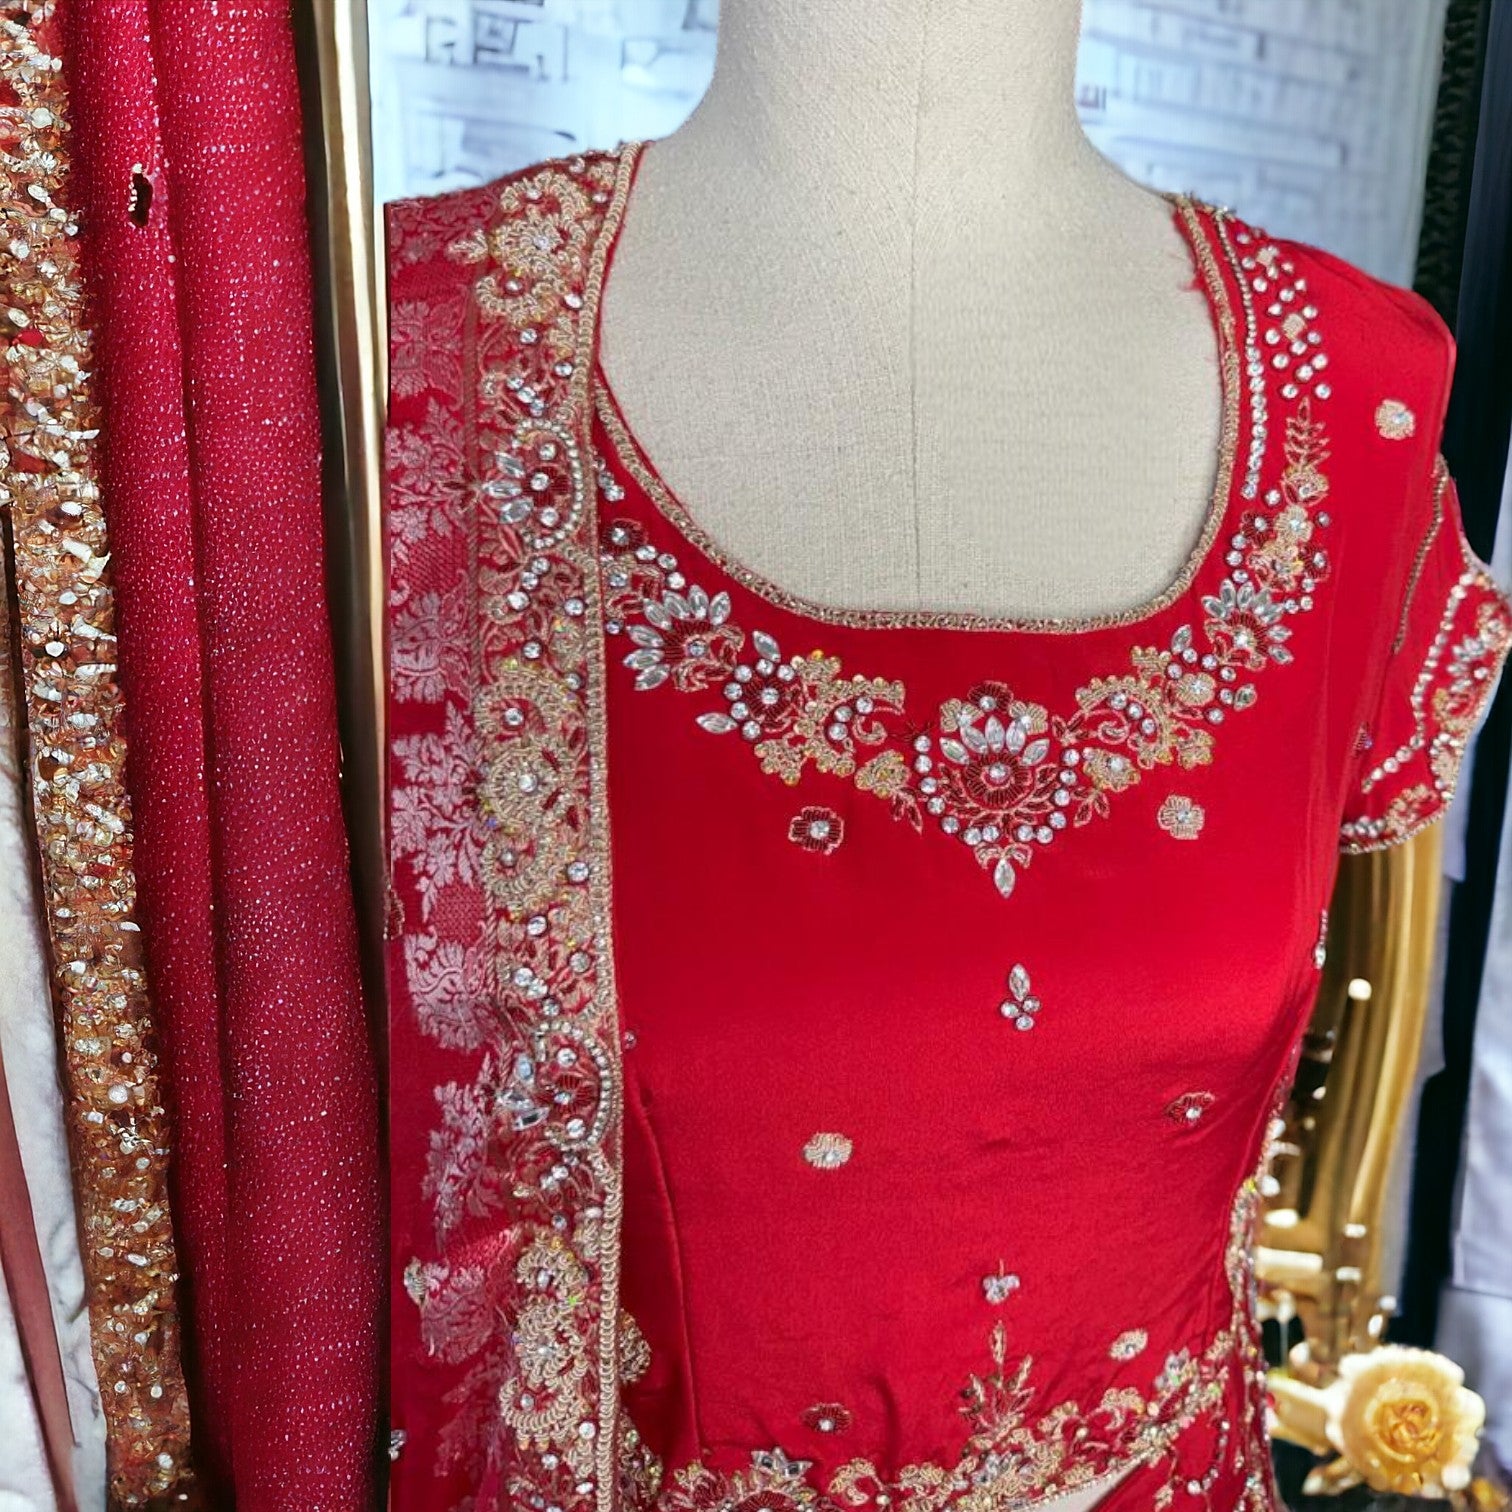 Scarlet Elegance: Bridal Lehnga Choli with Exquisite Kora Dabka Work-Stitched